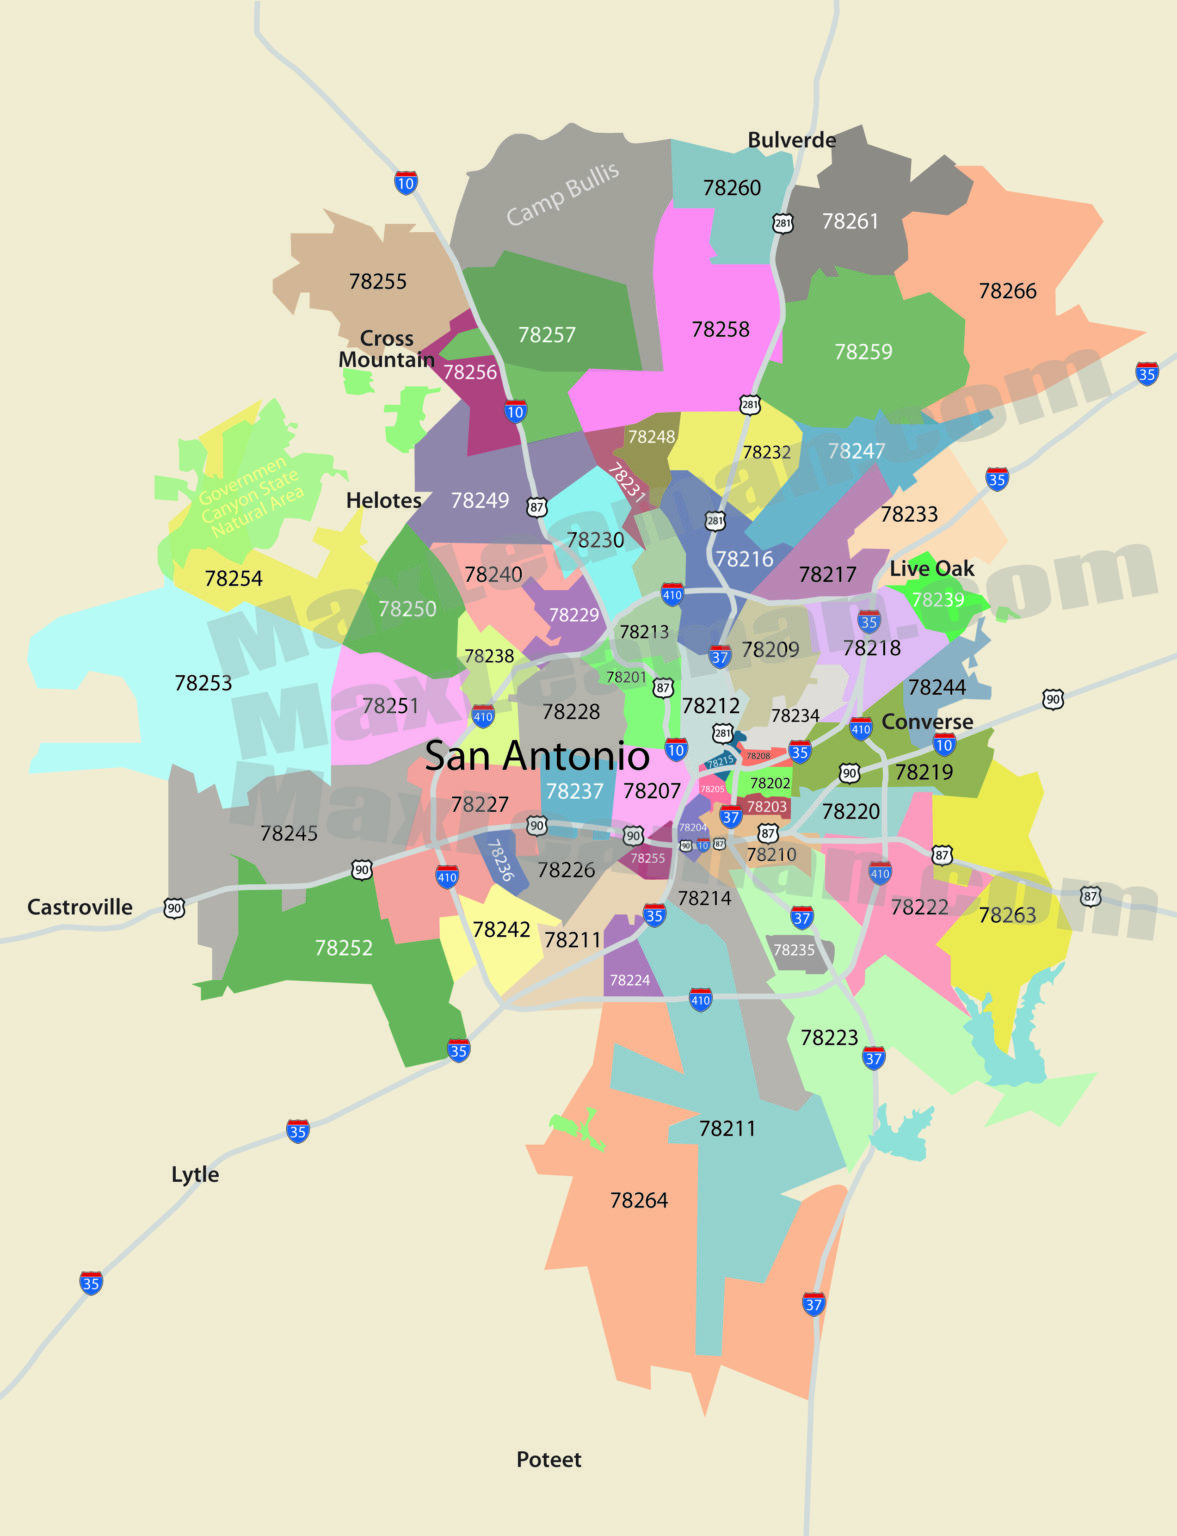 San Antonio Zip Code Map Zipcode Map Of San Antonio Texas